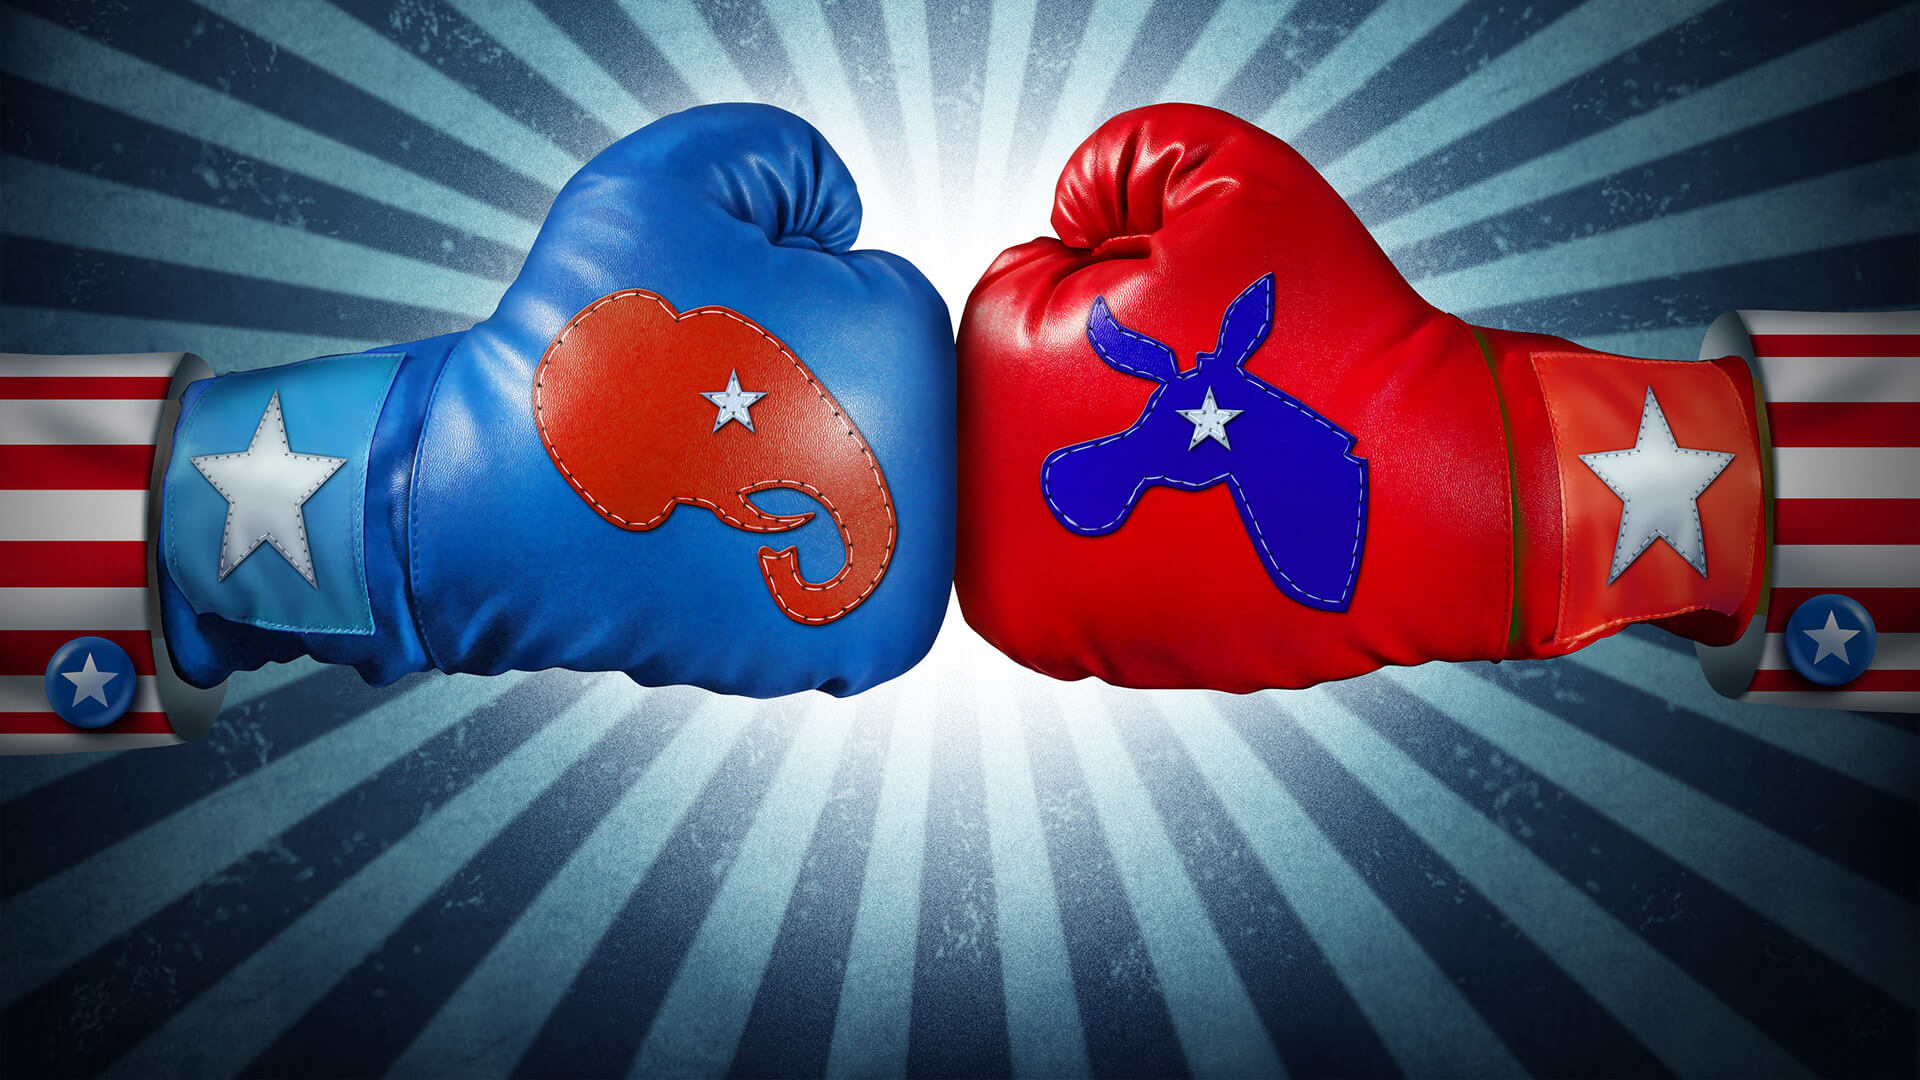 politics-elections-republicans-democrats-boxing-ss-1920